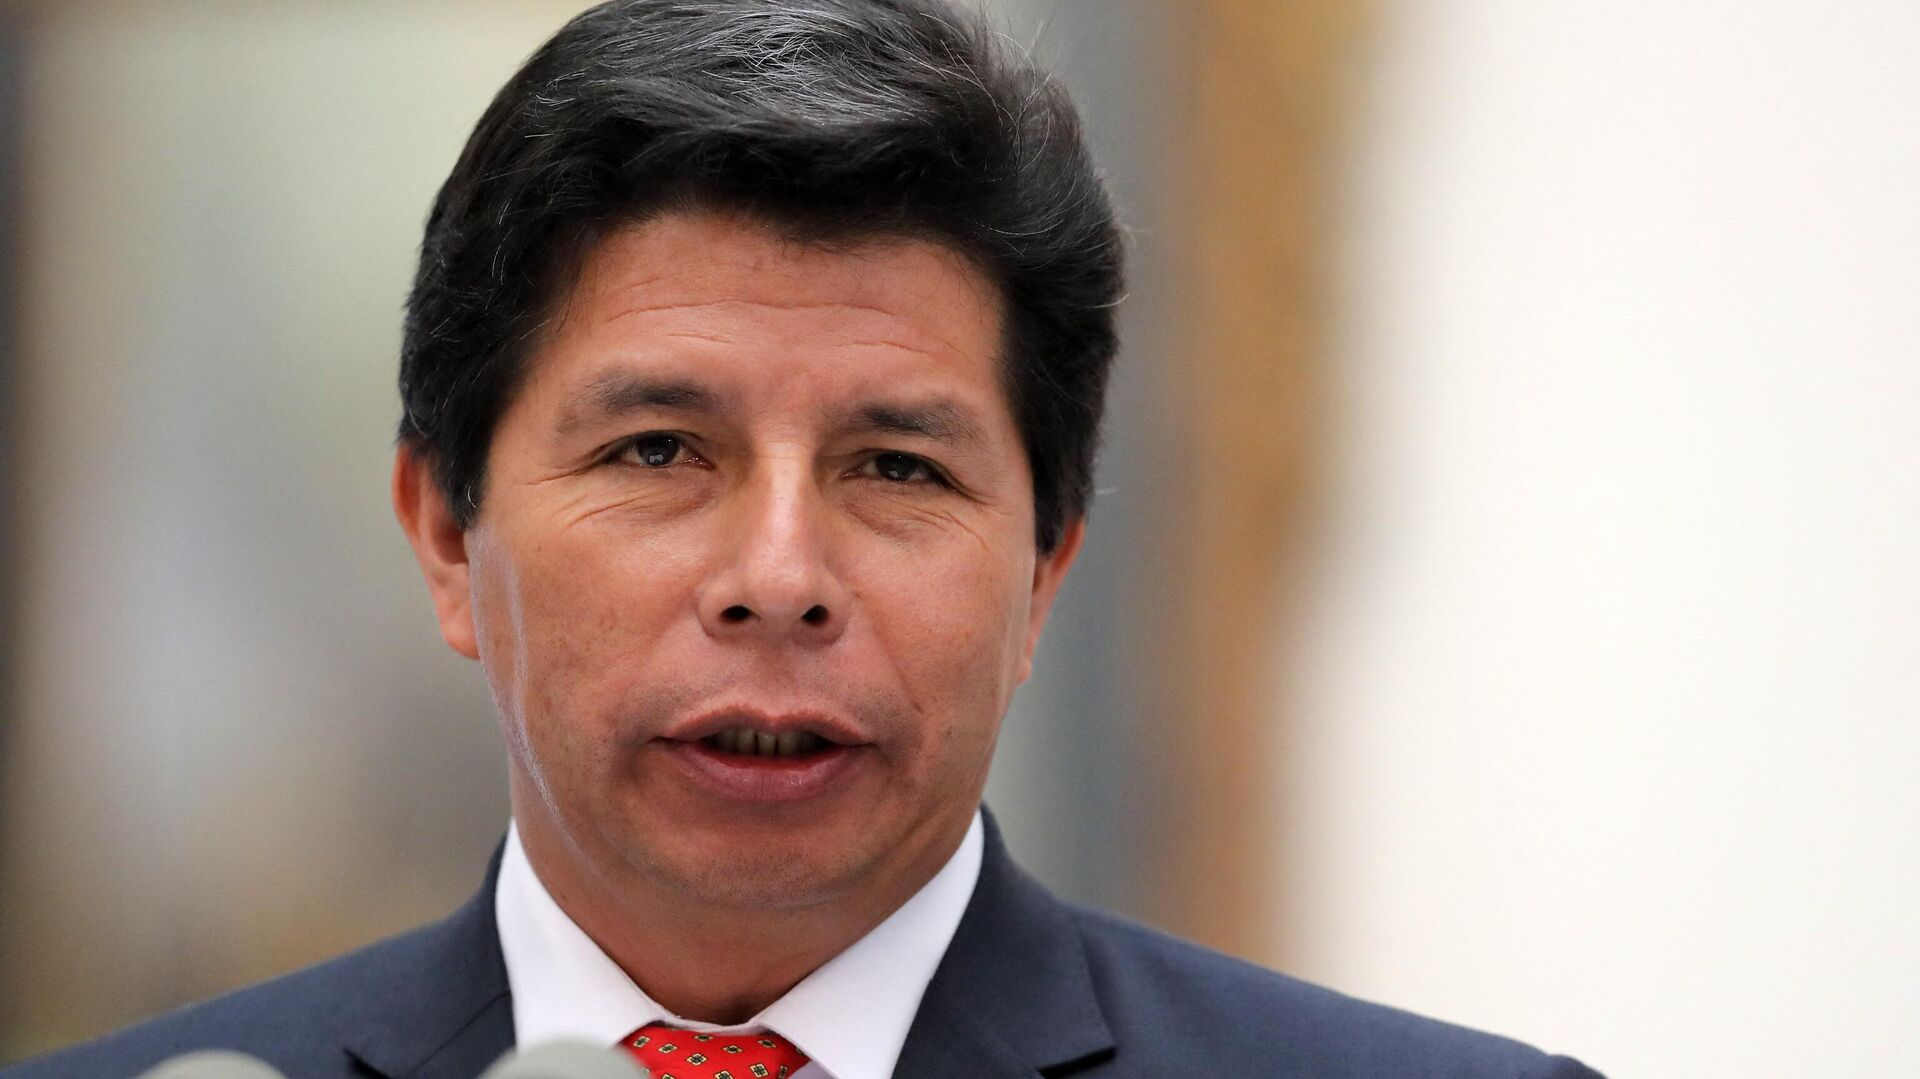 Justicia de Perú: Ejecutivo no aceptará destitución de Castillo